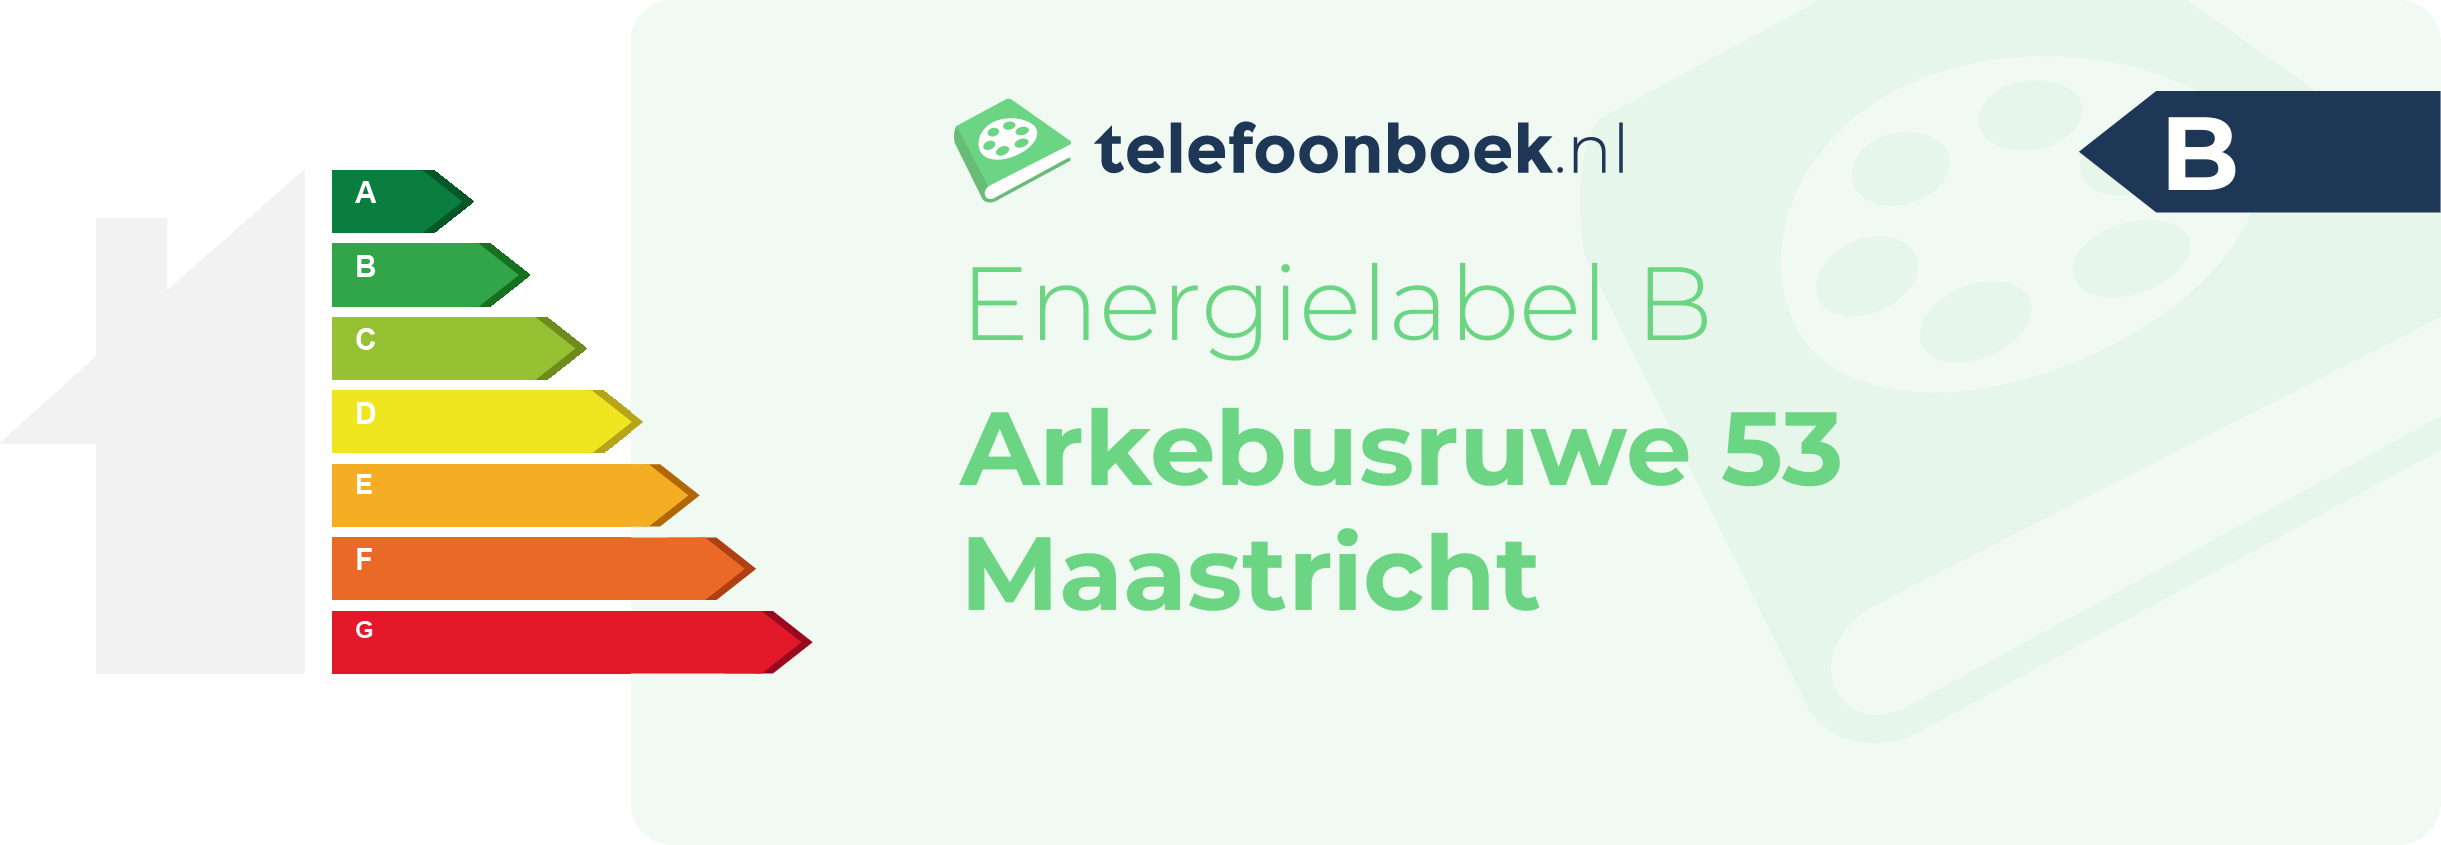 Energielabel Arkebusruwe 53 Maastricht